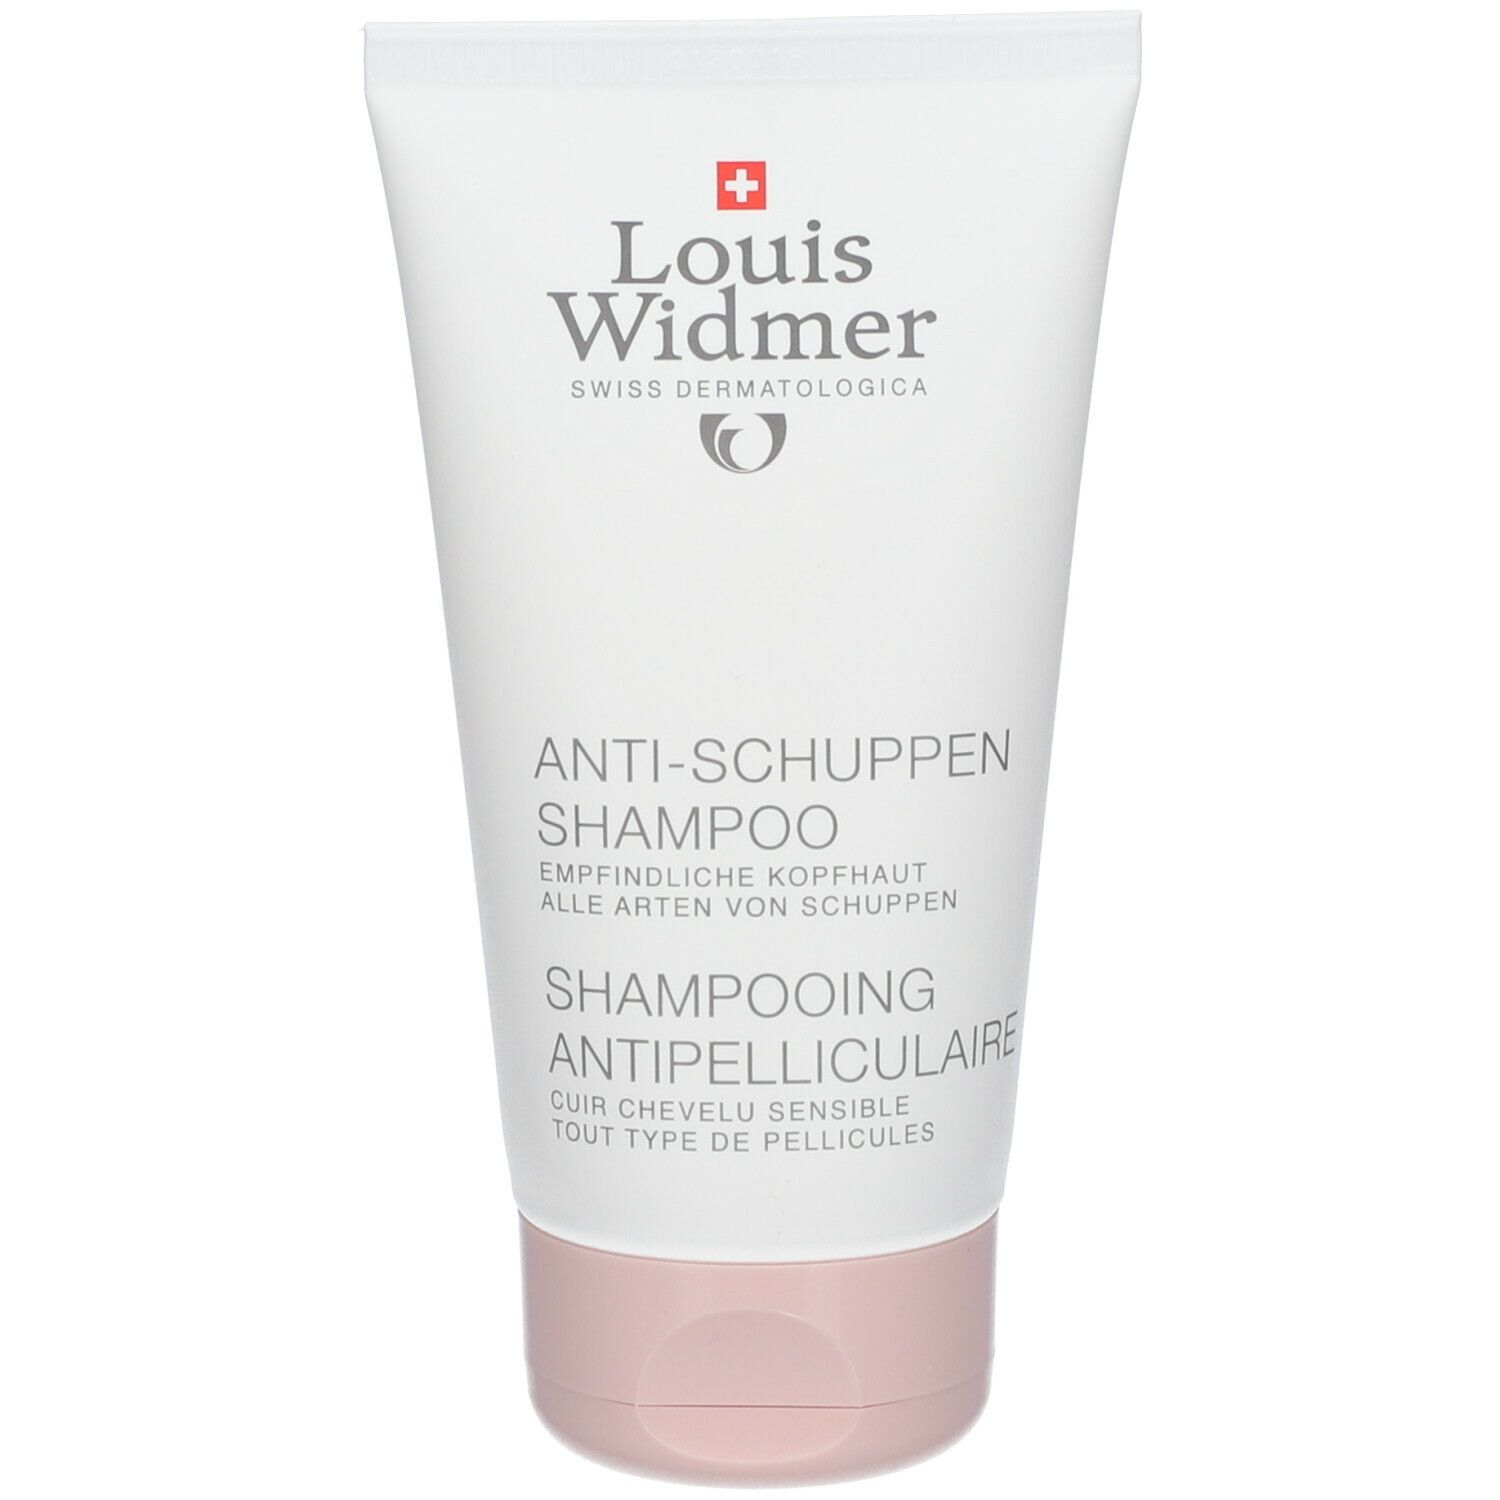 Louis Widmer Anti-Schuppen-Shampoo pafümiert